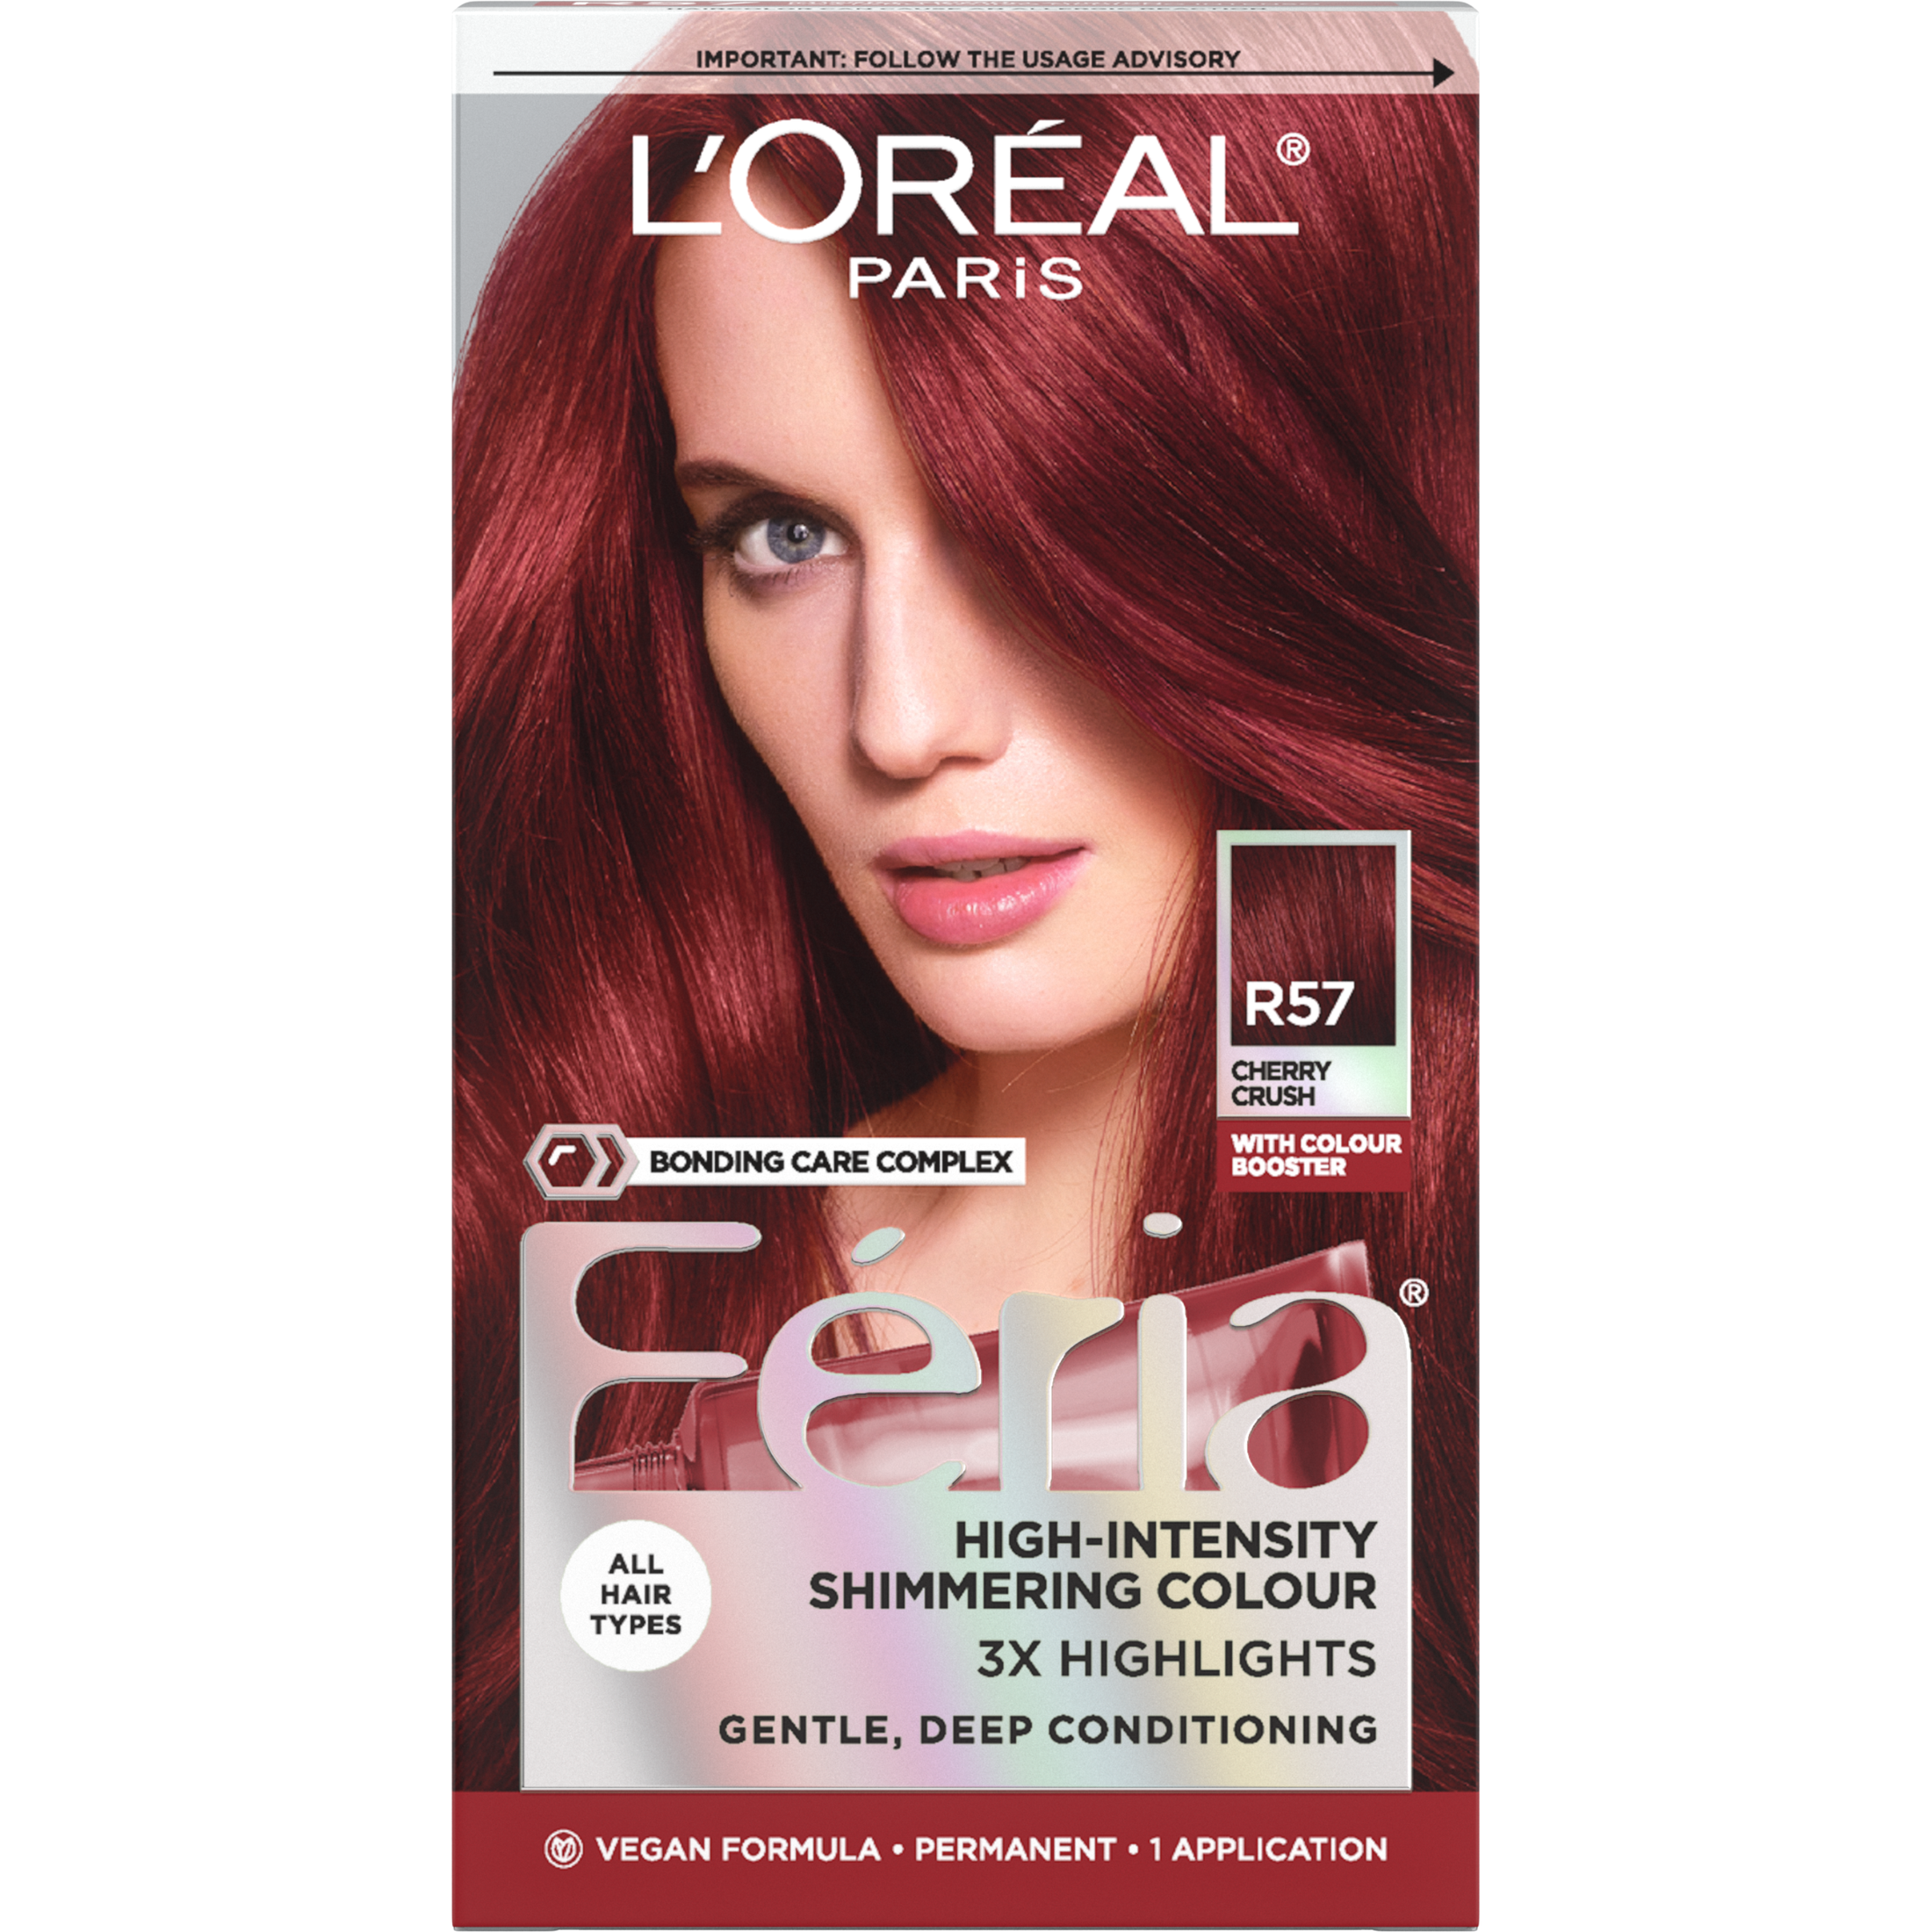 L'Oreal Paris Feria Permanent Hair Color, R57 Cherry Crush Intense Medium Auburn - image 1 of 9